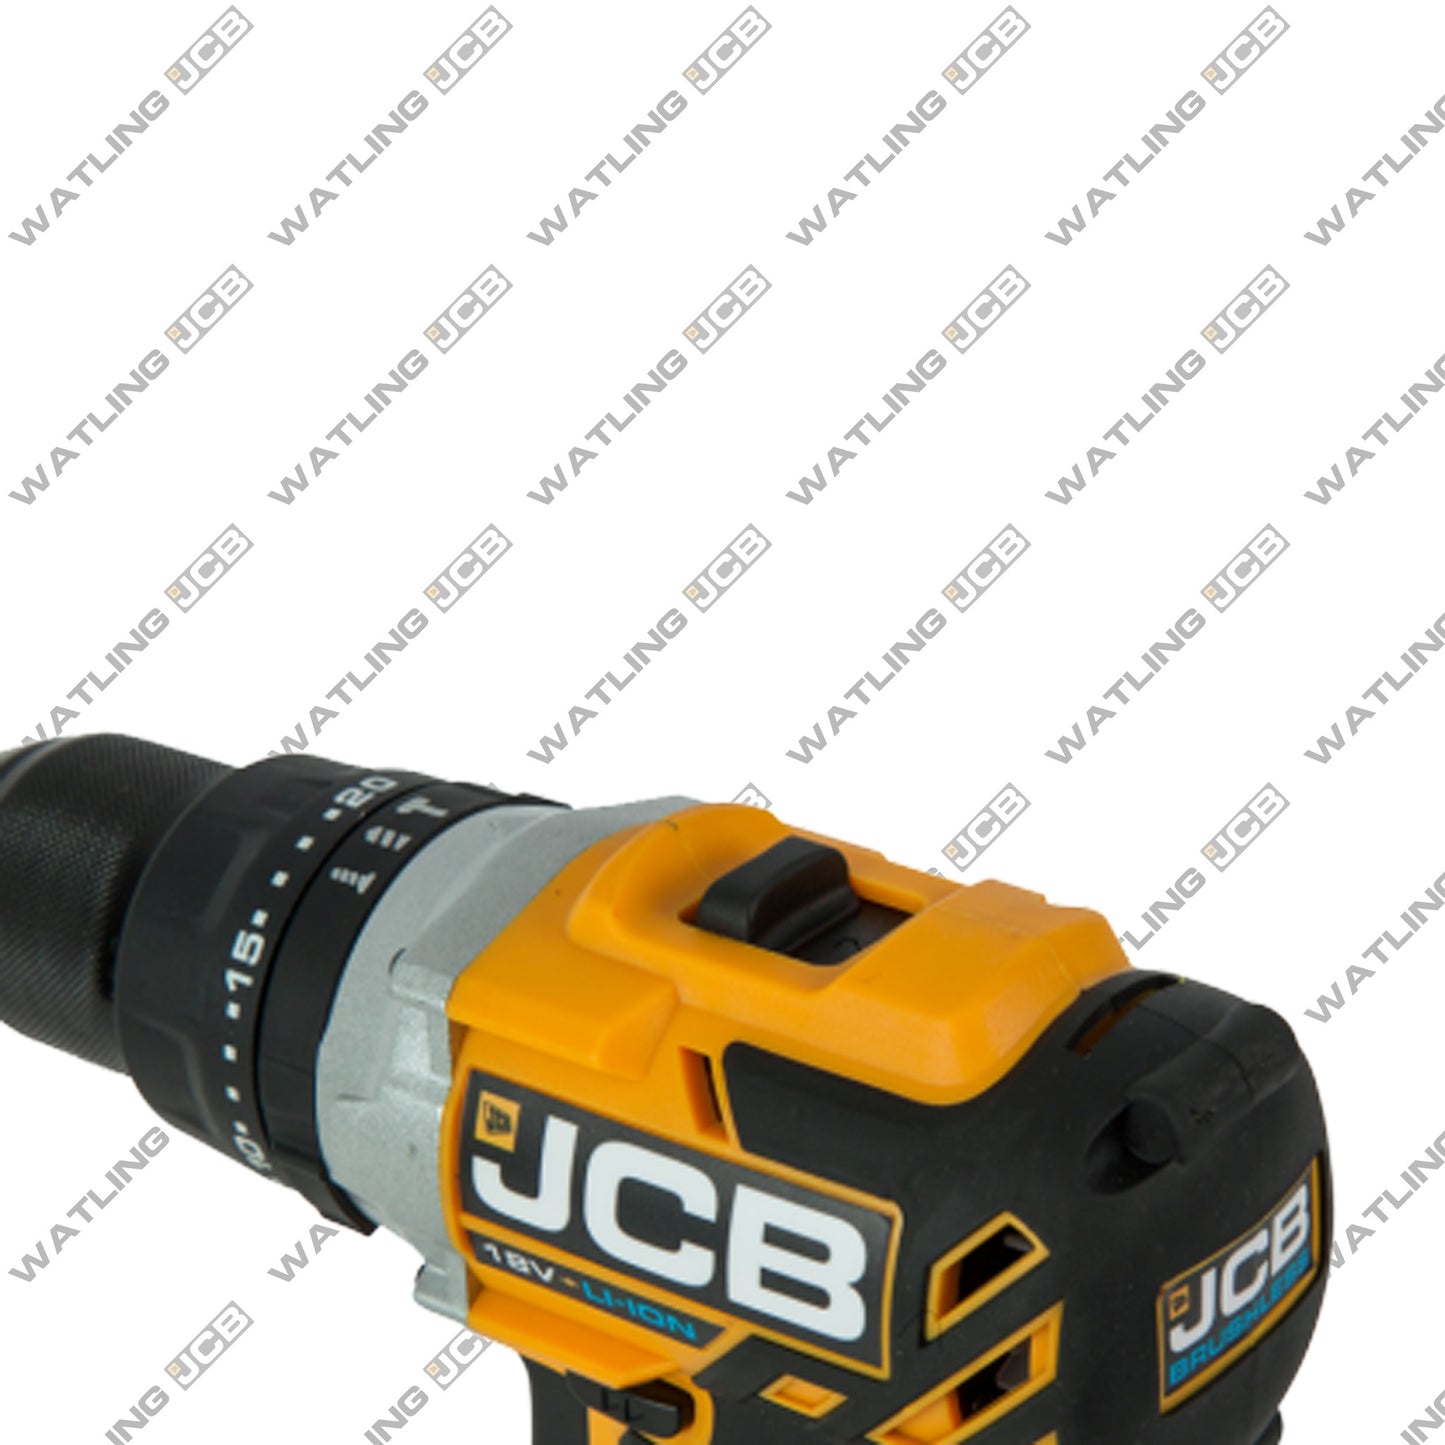 JCB 18V Brushless Combi Drill bare unit